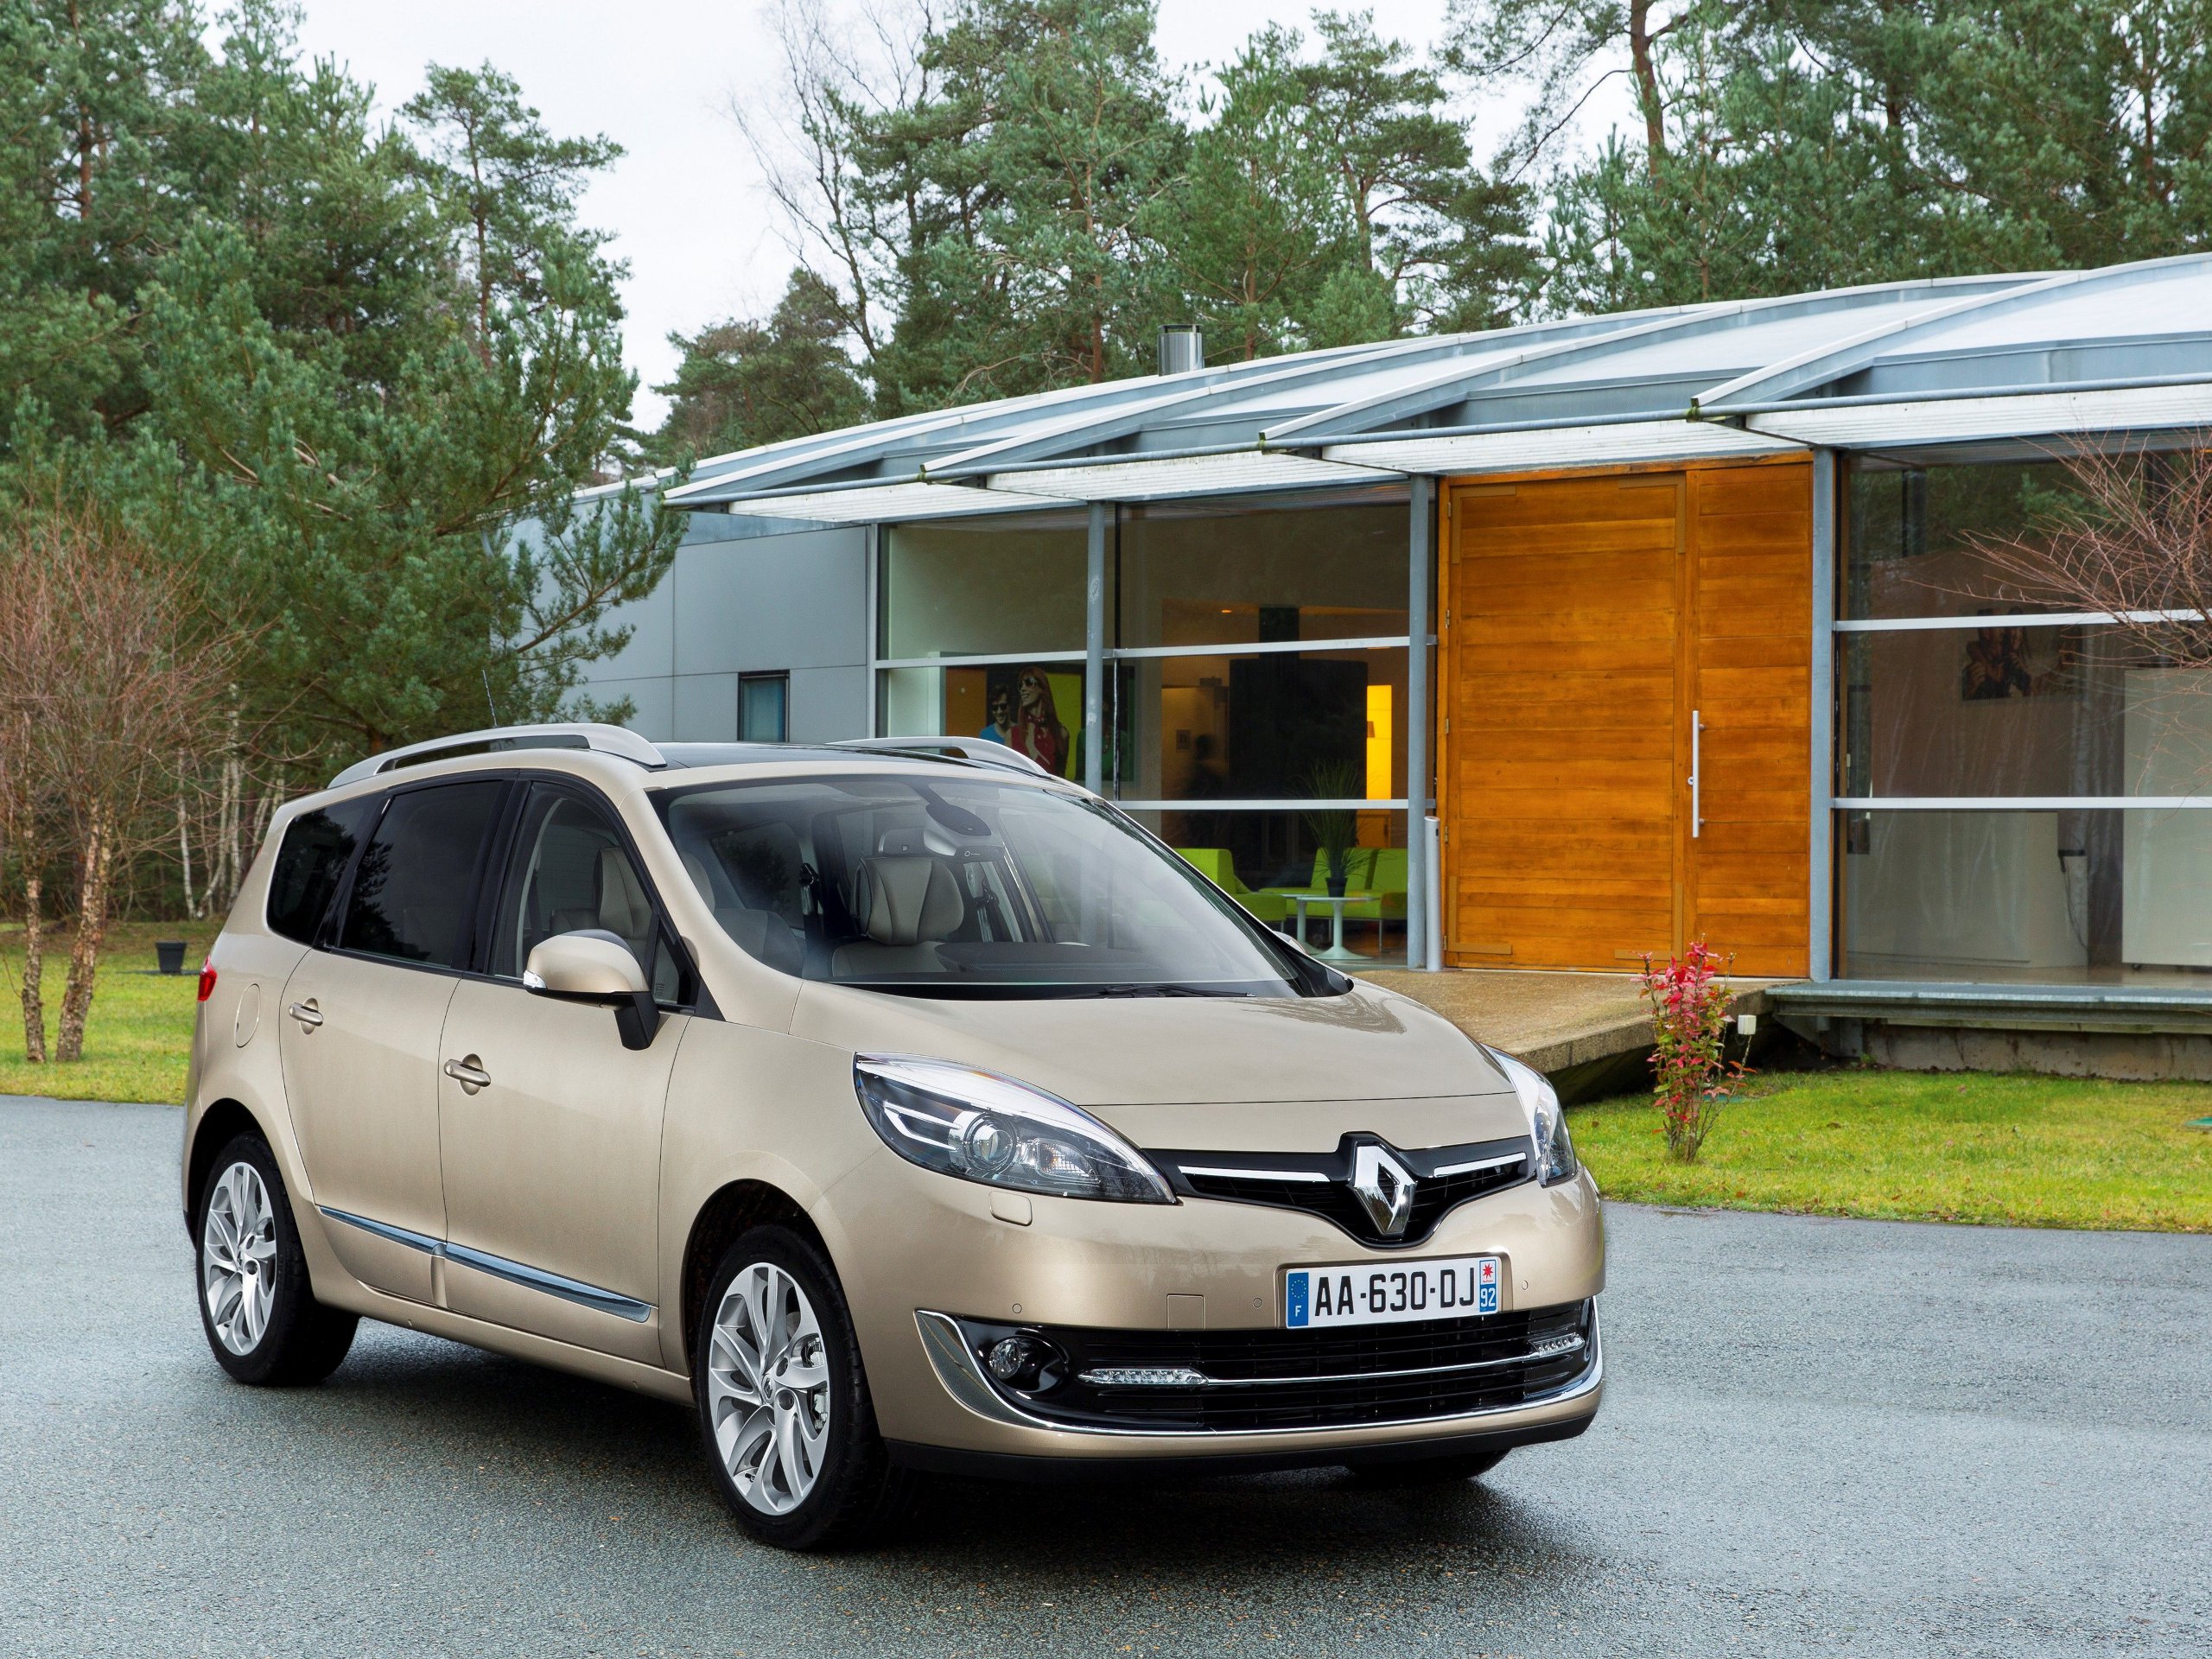 Renault Scenic 2013: Facelift für Kompakt-Van und Geländeversion